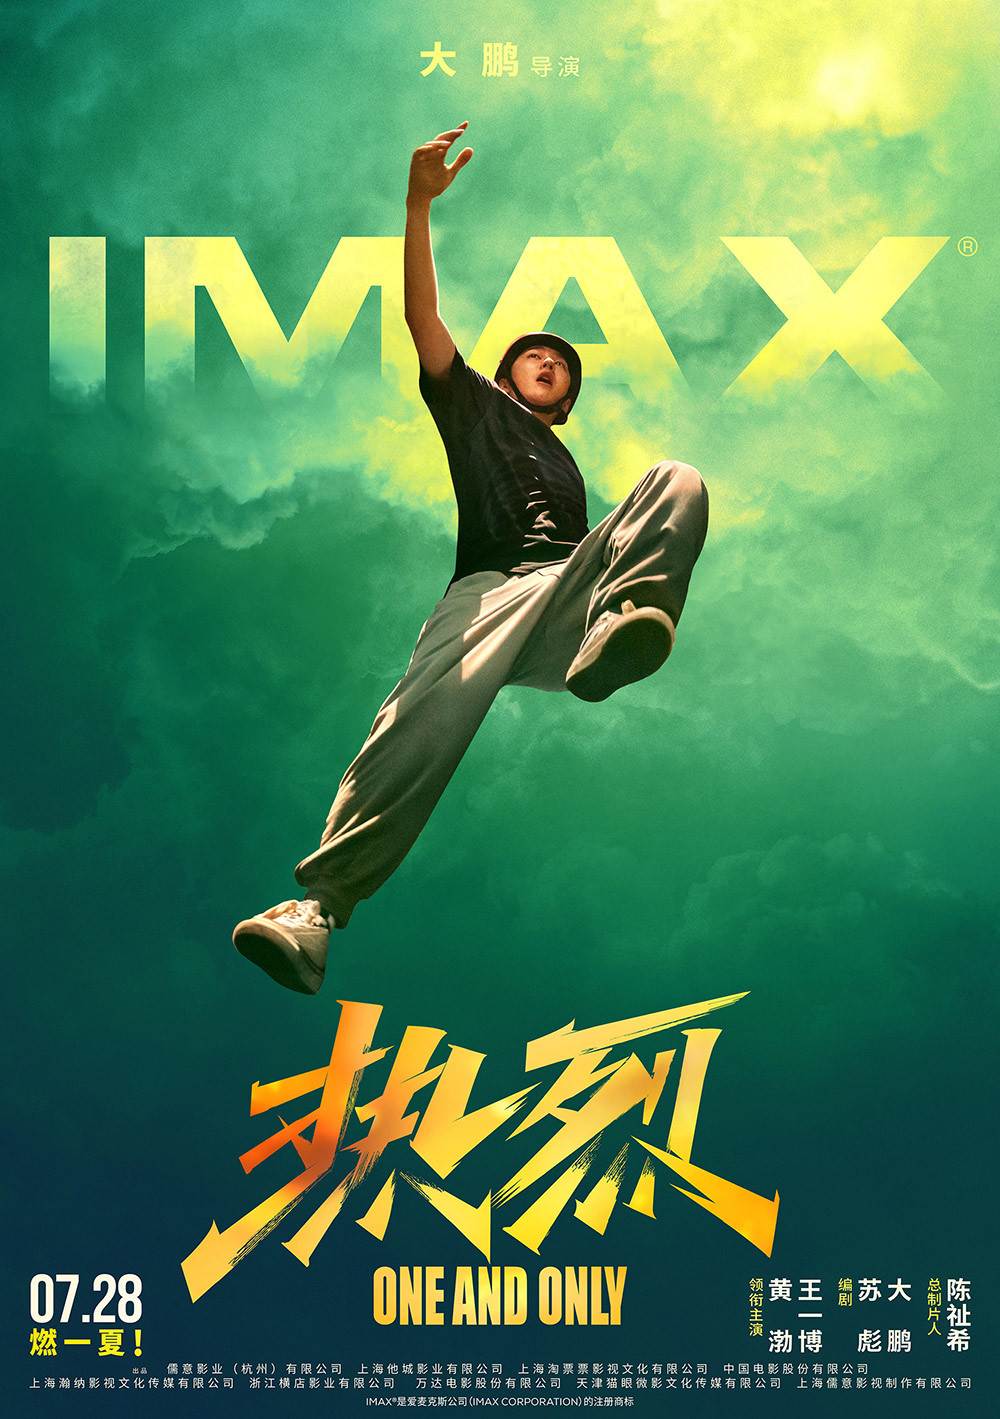 【影视动漫】IMAX在京举办《热烈》观影 20分钟大赛场面必看IMAX-第0张